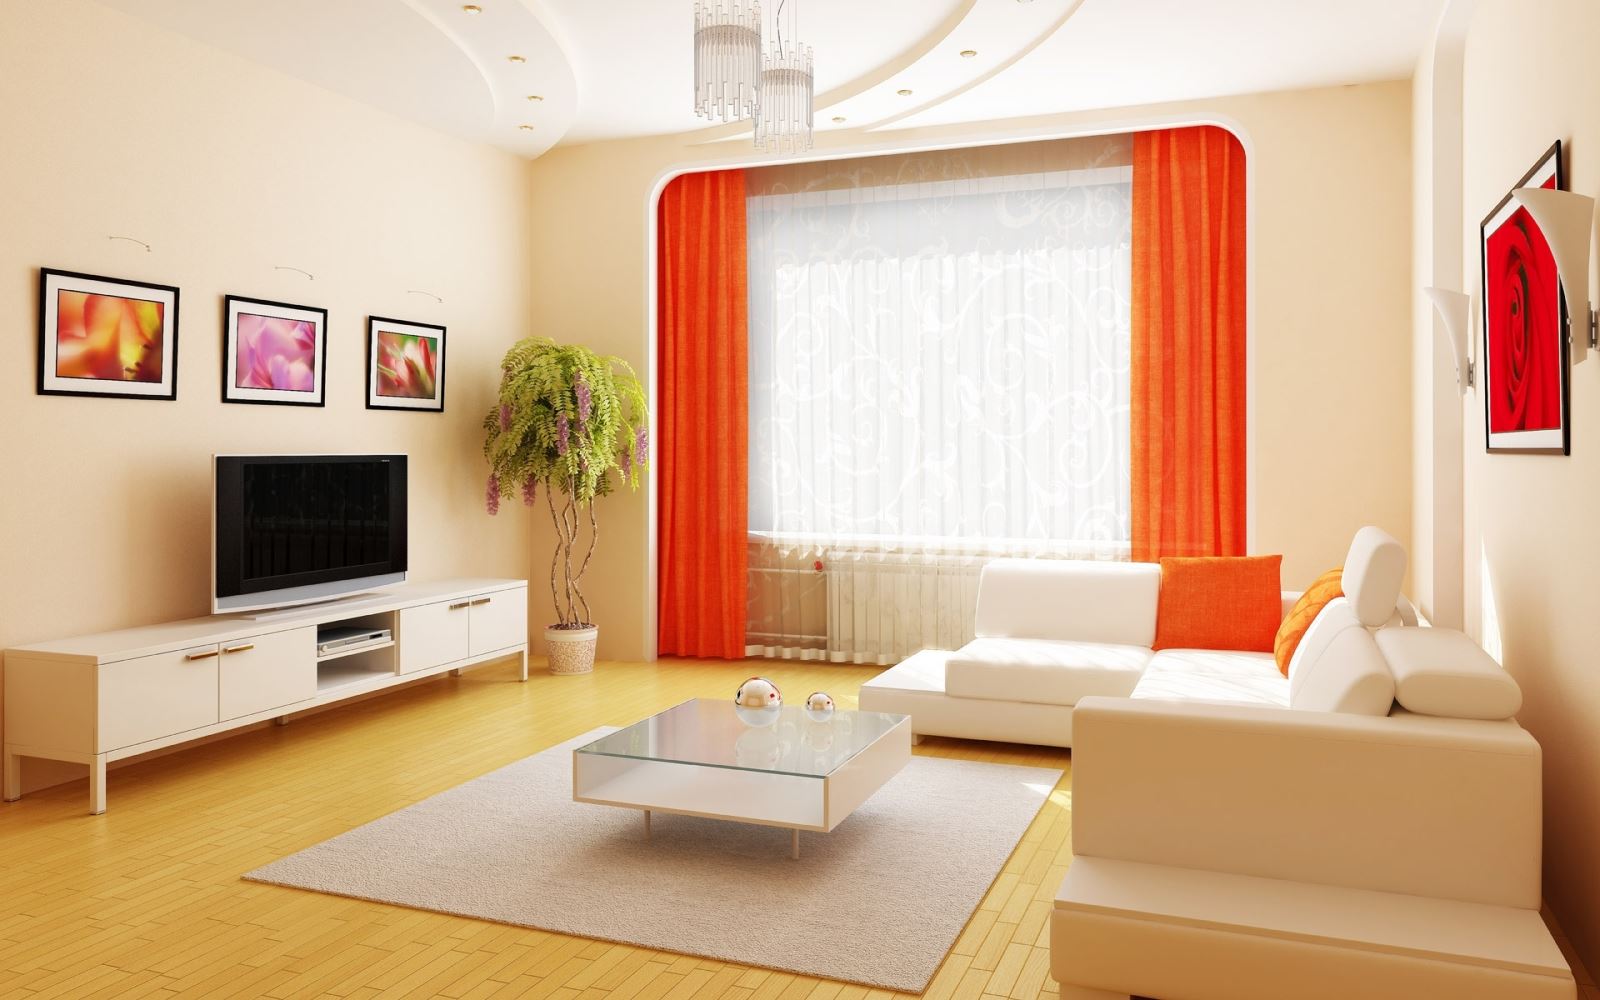 Mẫu thiết kế nội thất cho phòng khách giá rẻ nào đang được nhiều người quan tâm nhất?